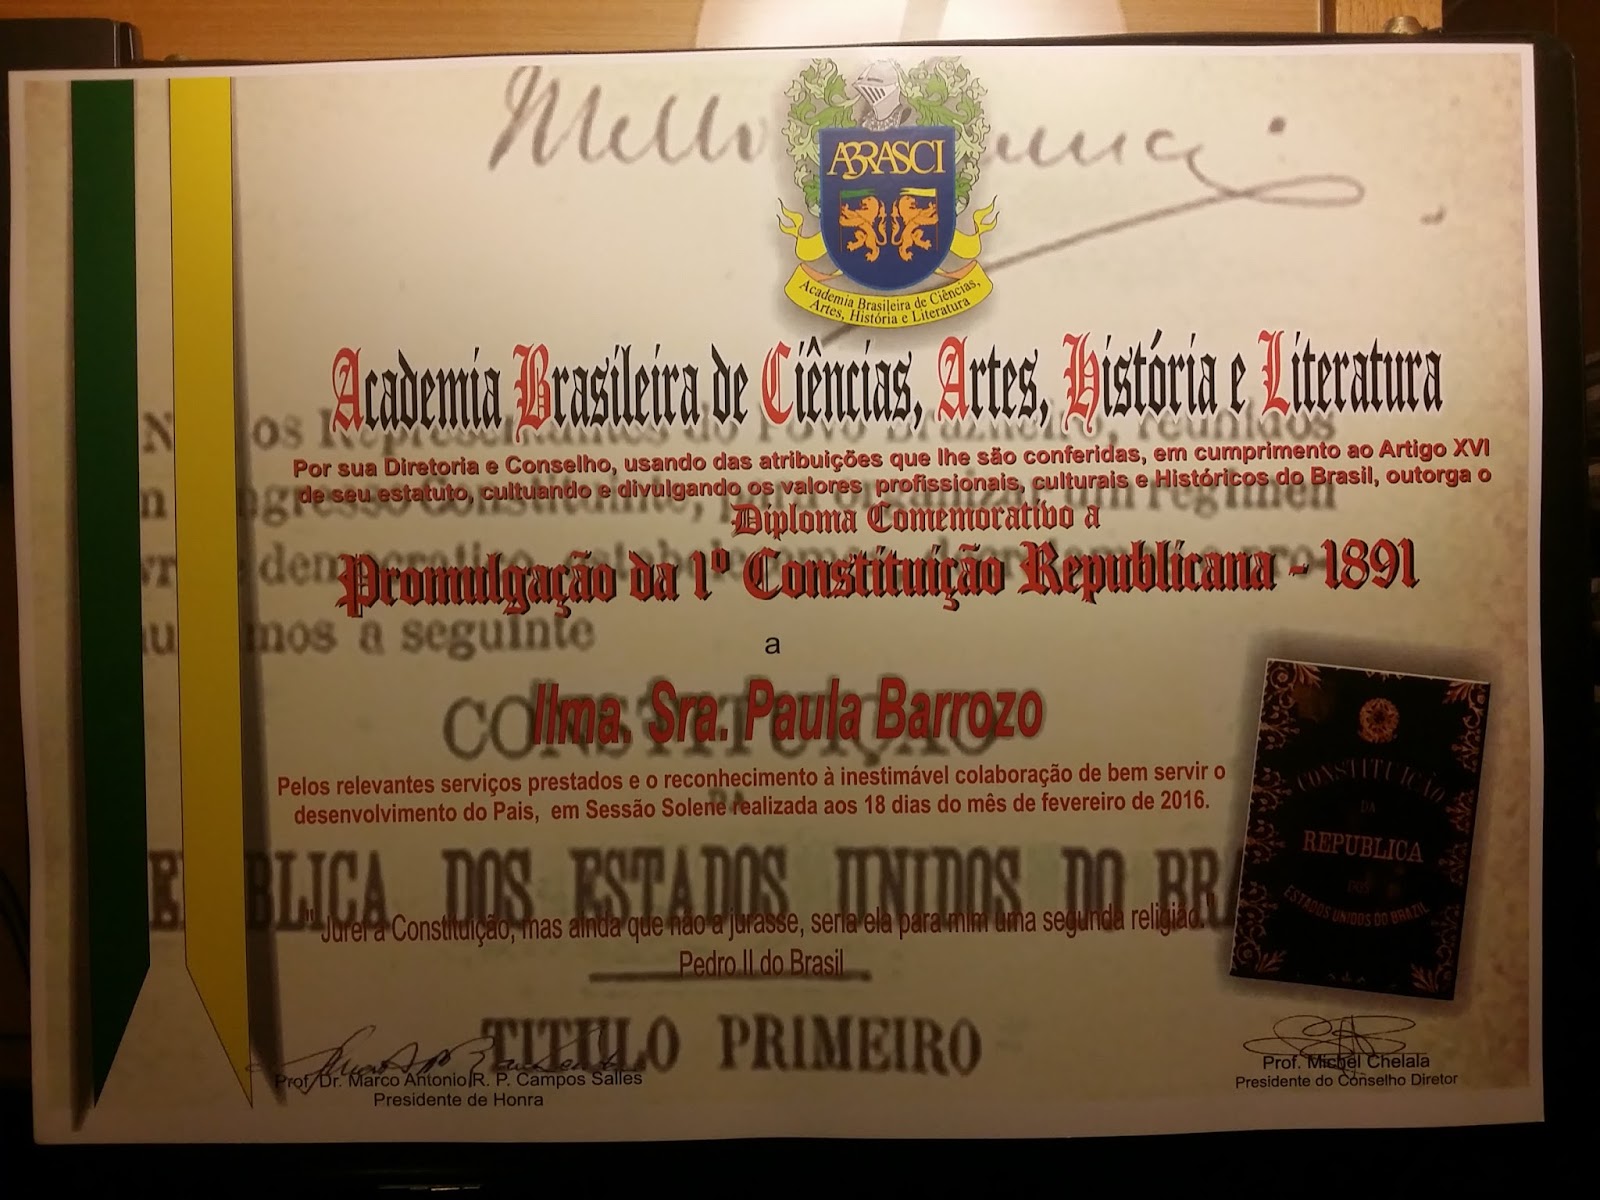 PAULA BARROZO - ABRASCI -  Diploma Comemorativo a Promulgação da 1ª Constituição Republicana em 189